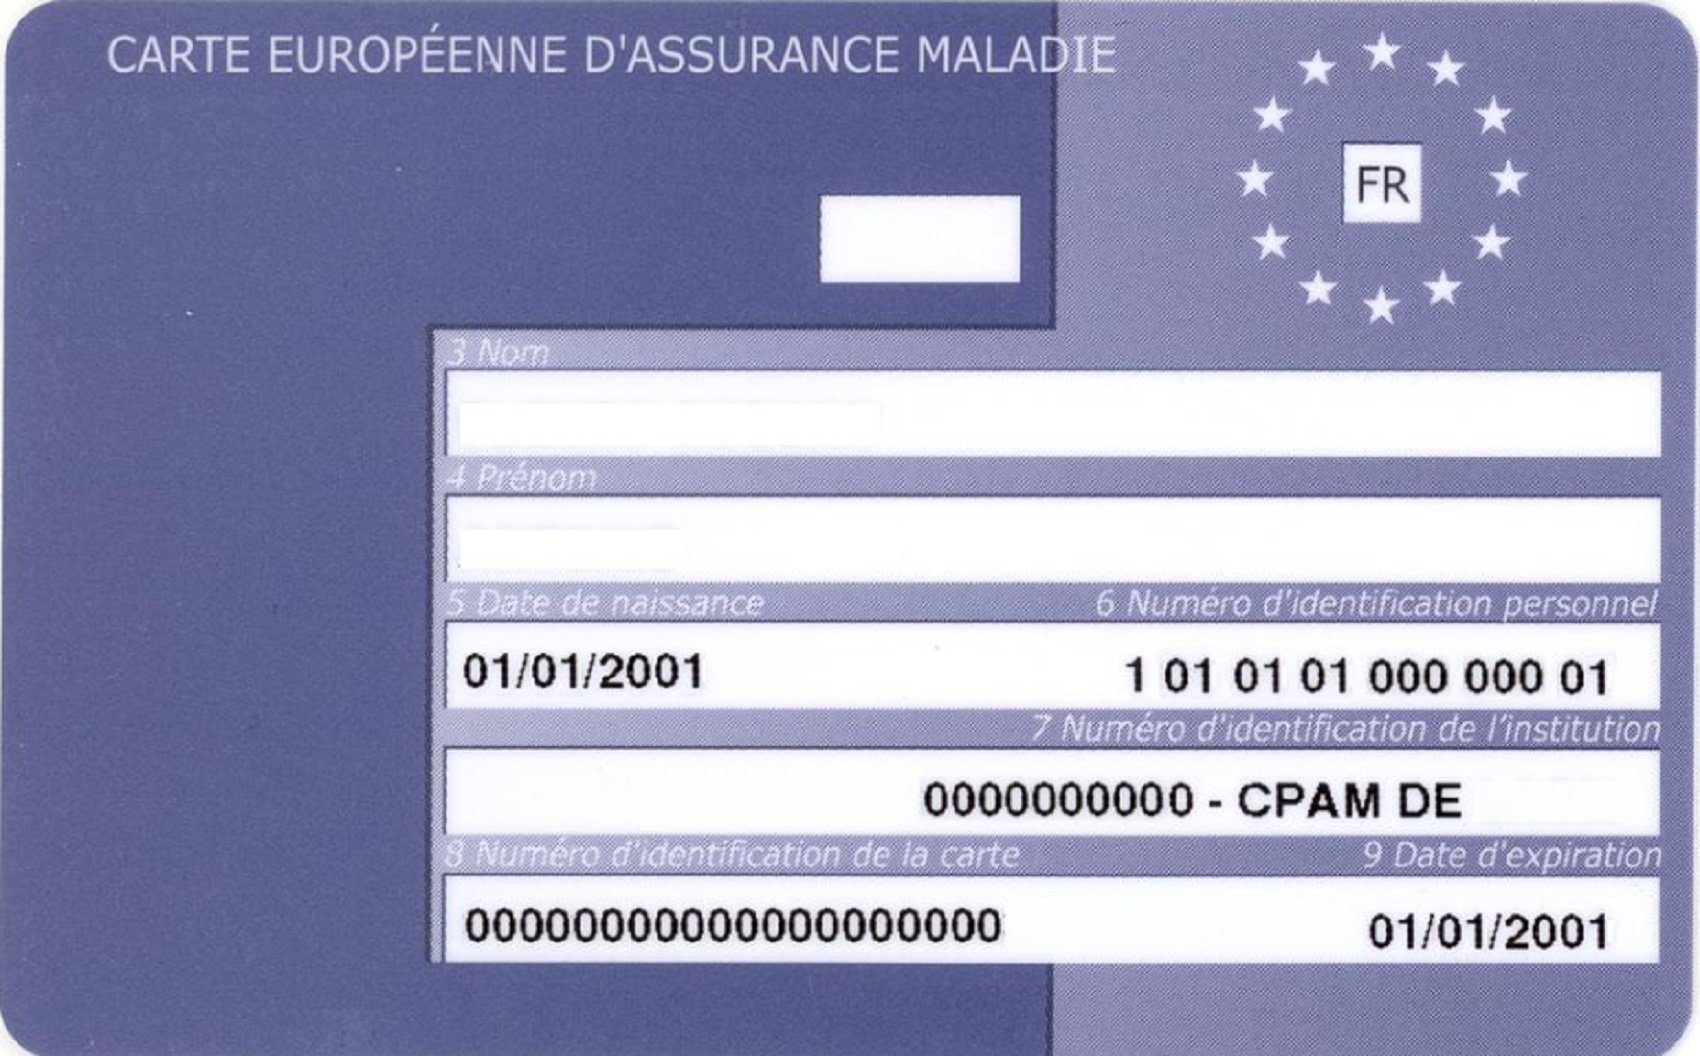 Una web utiliza el logo de la Comisión Europea y cobra 59 euros para renovar la tarjeta sanitaria